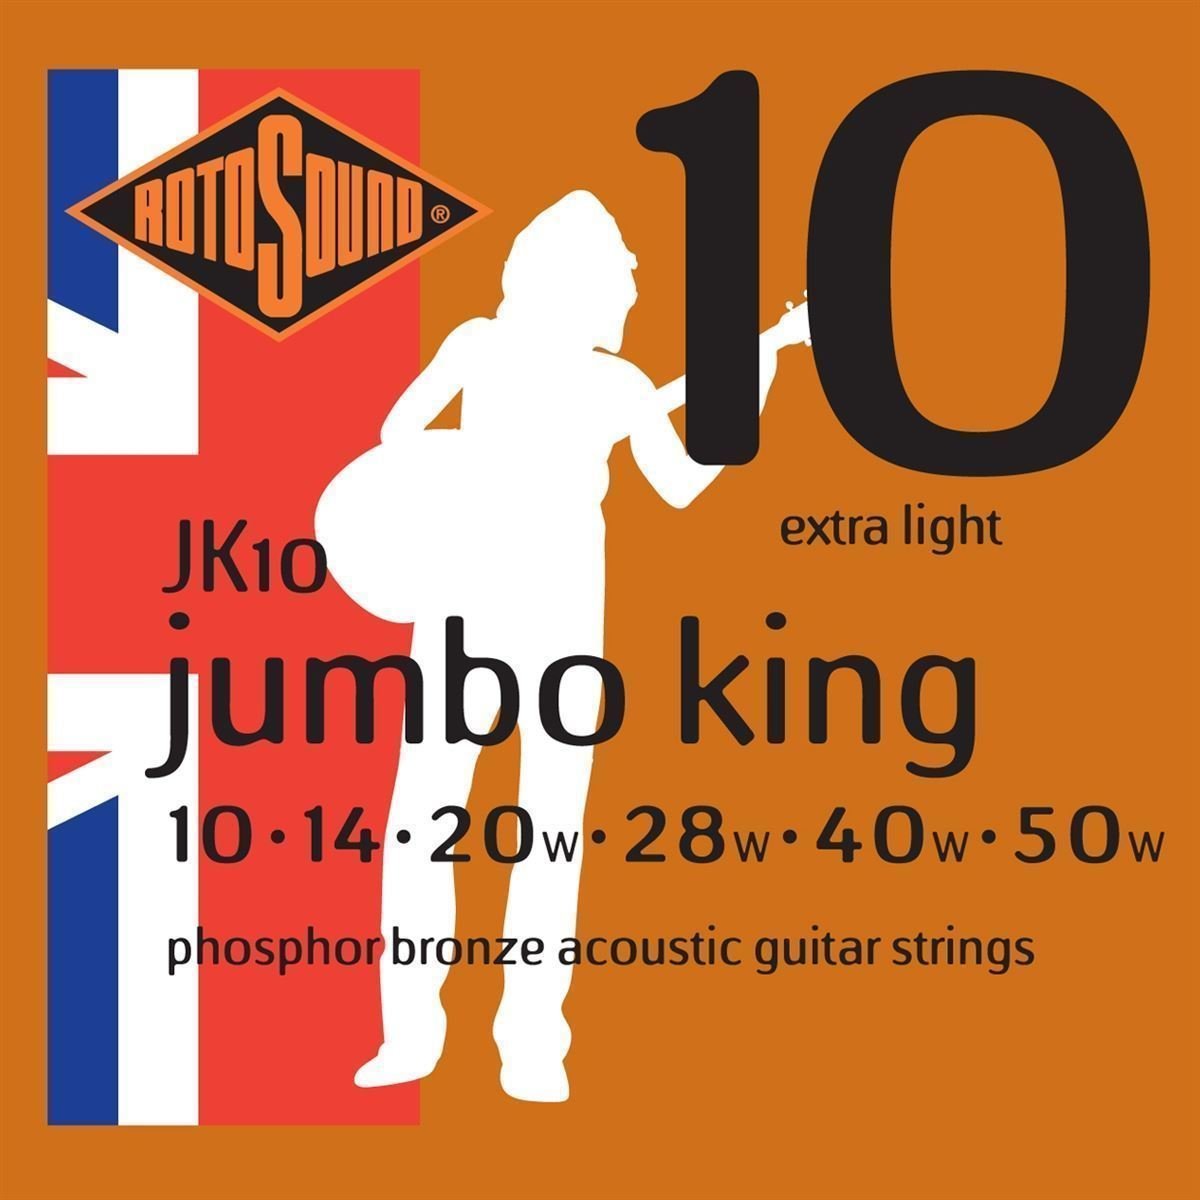 Struny pre akustickú gitaru Rotosound JK10